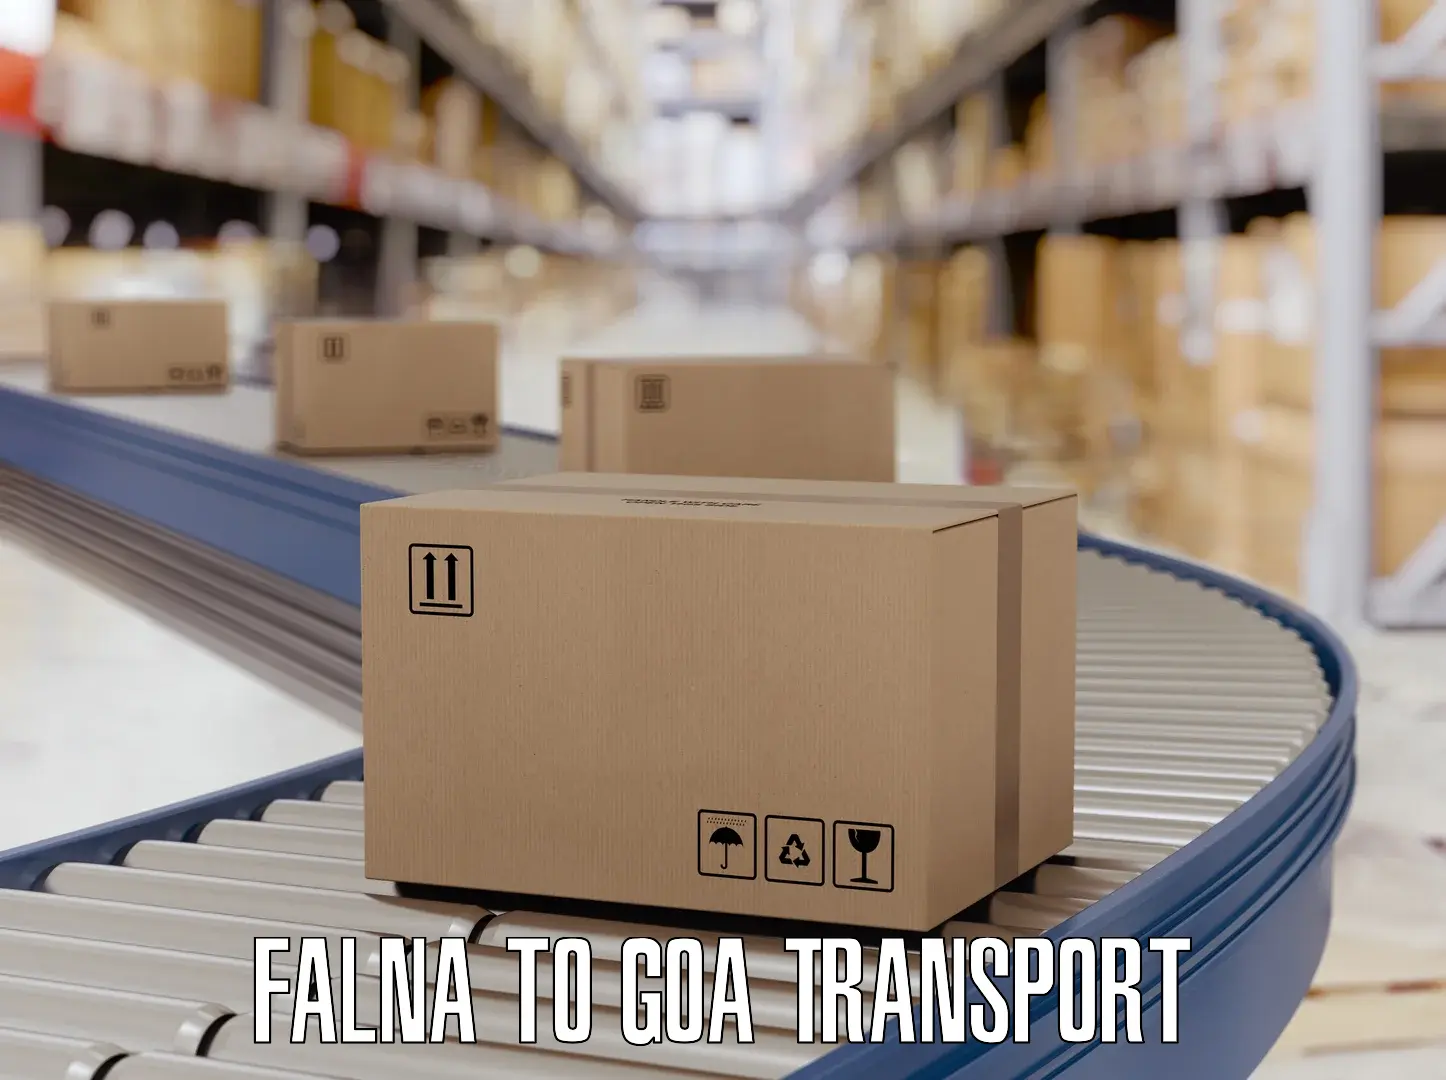 Air freight transport services Falna to Vasco da Gama